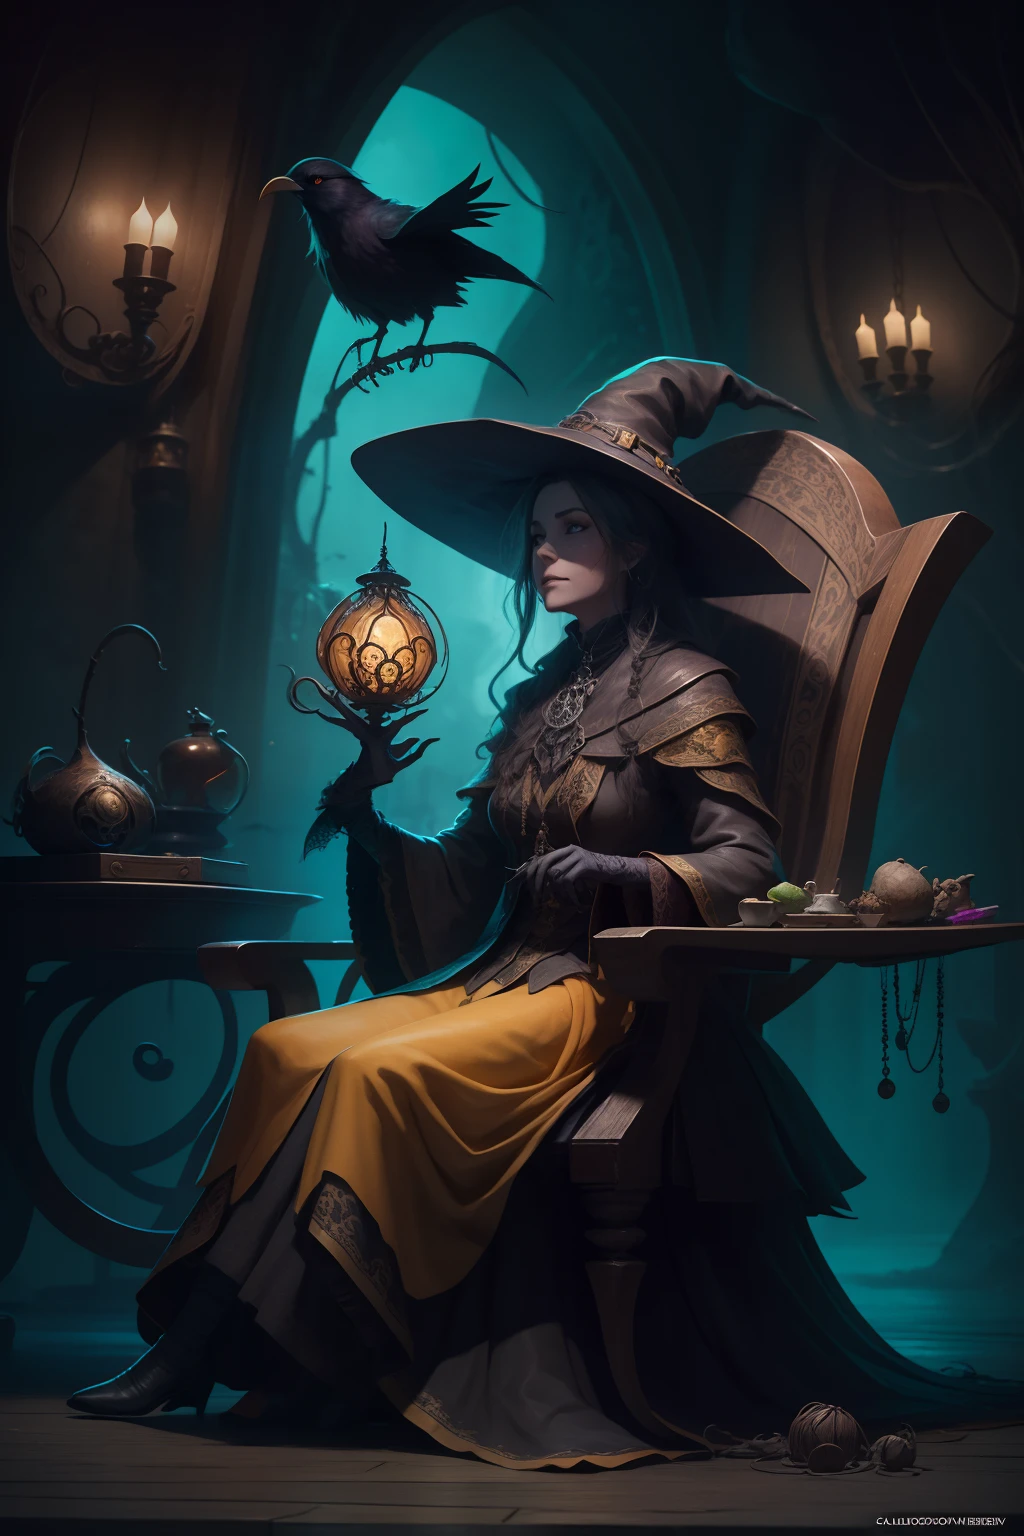 背景中，一位老巫婆坐在一张 calddirao 椅子上，手里拿着一只索尼斯特乌鸦